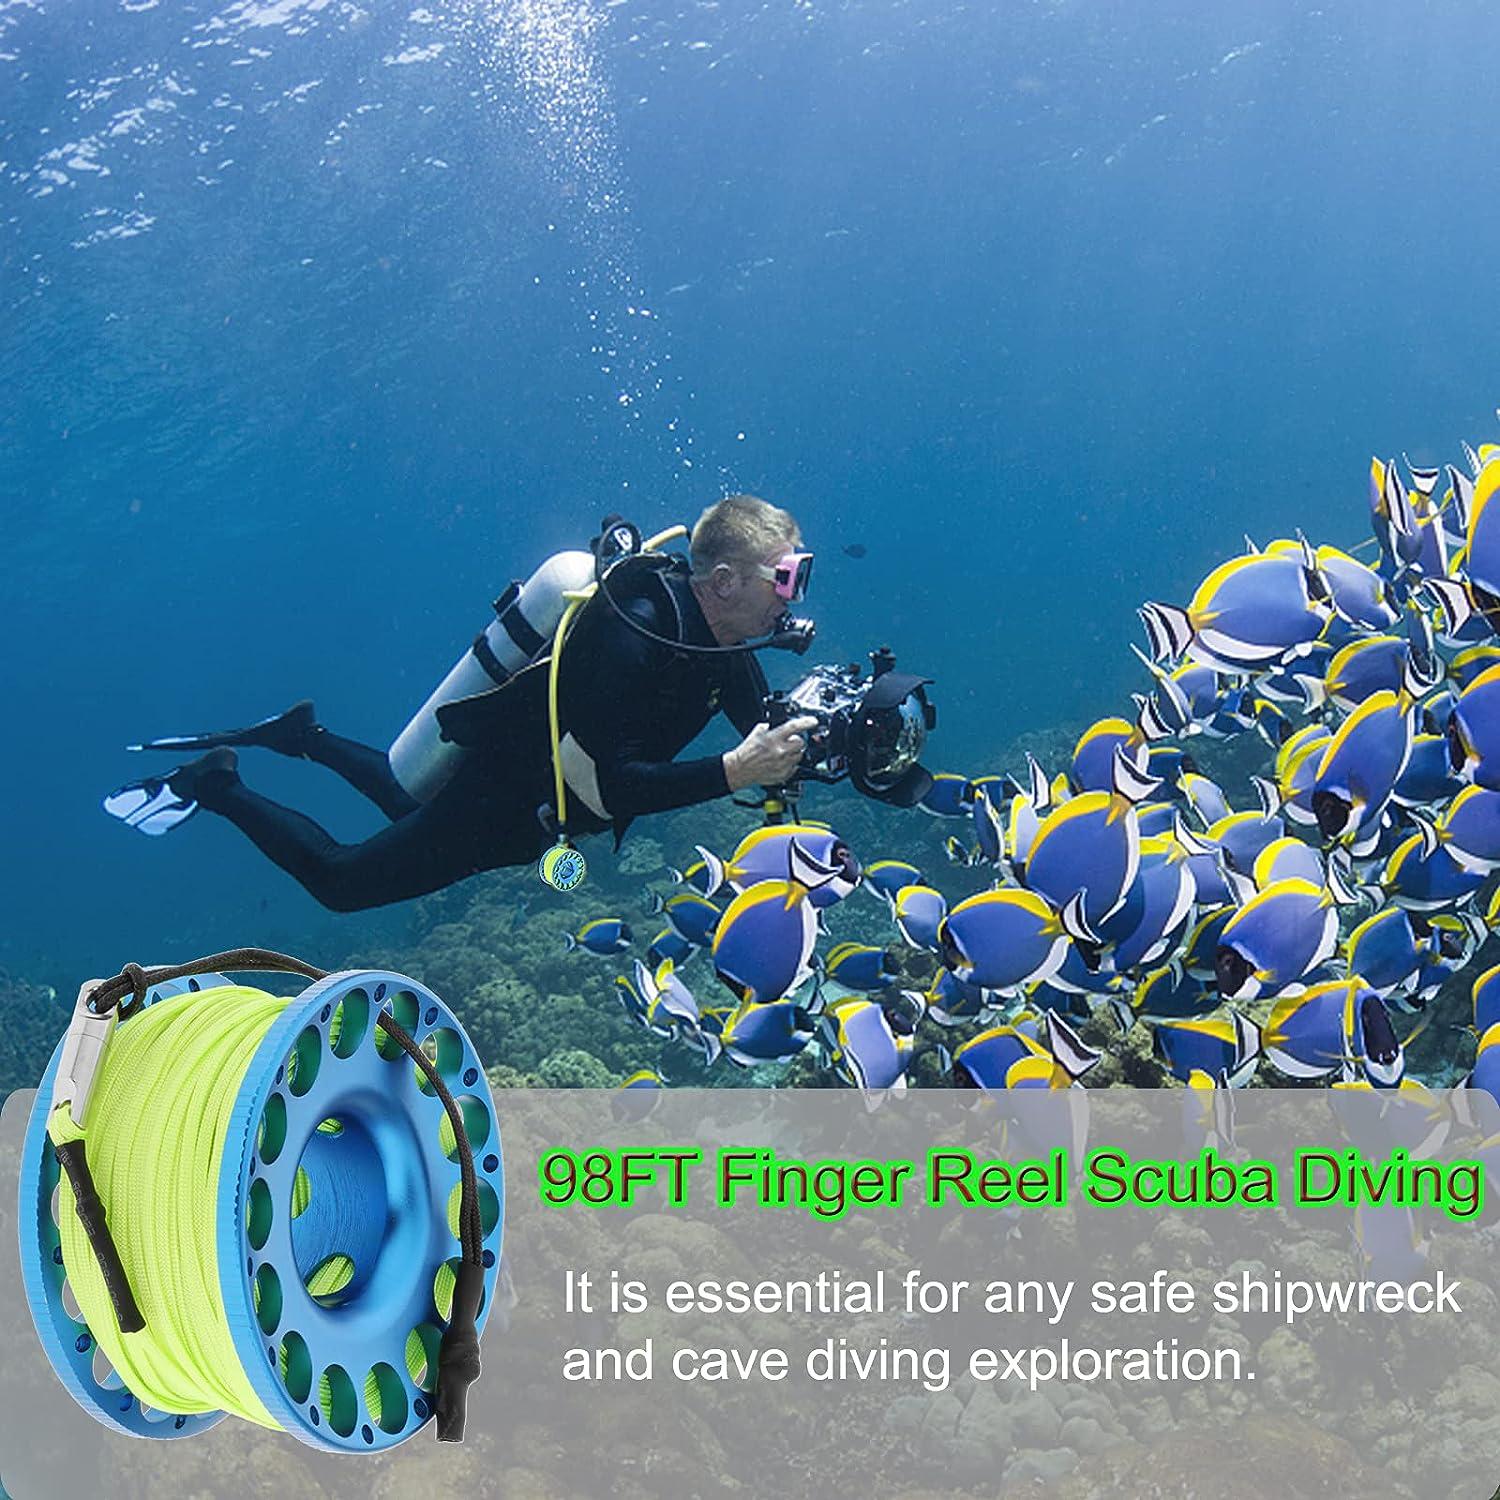 YUNNLEZT 98FT Finger Reel Scuba Diving, Aluminum Lightweight Scuba